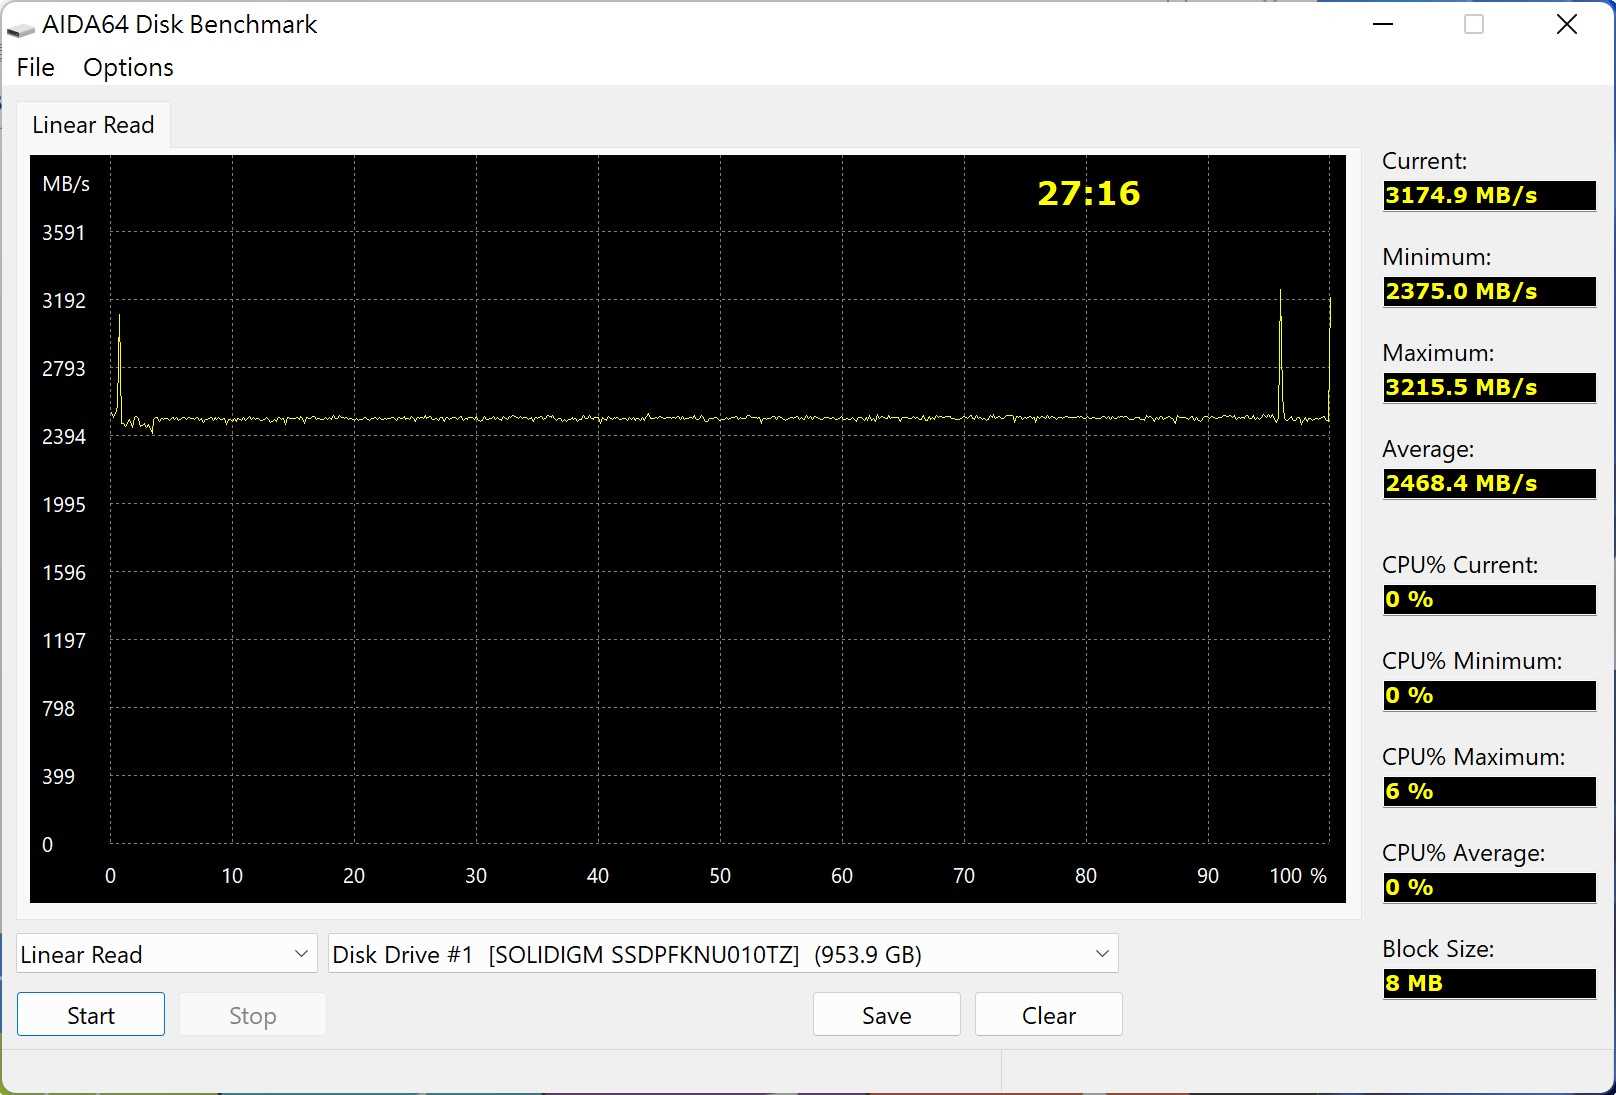 AIDA64線性讀取測試除了有2組峰值外，速度表現相當平穩，平均值為2468.4MB/s。